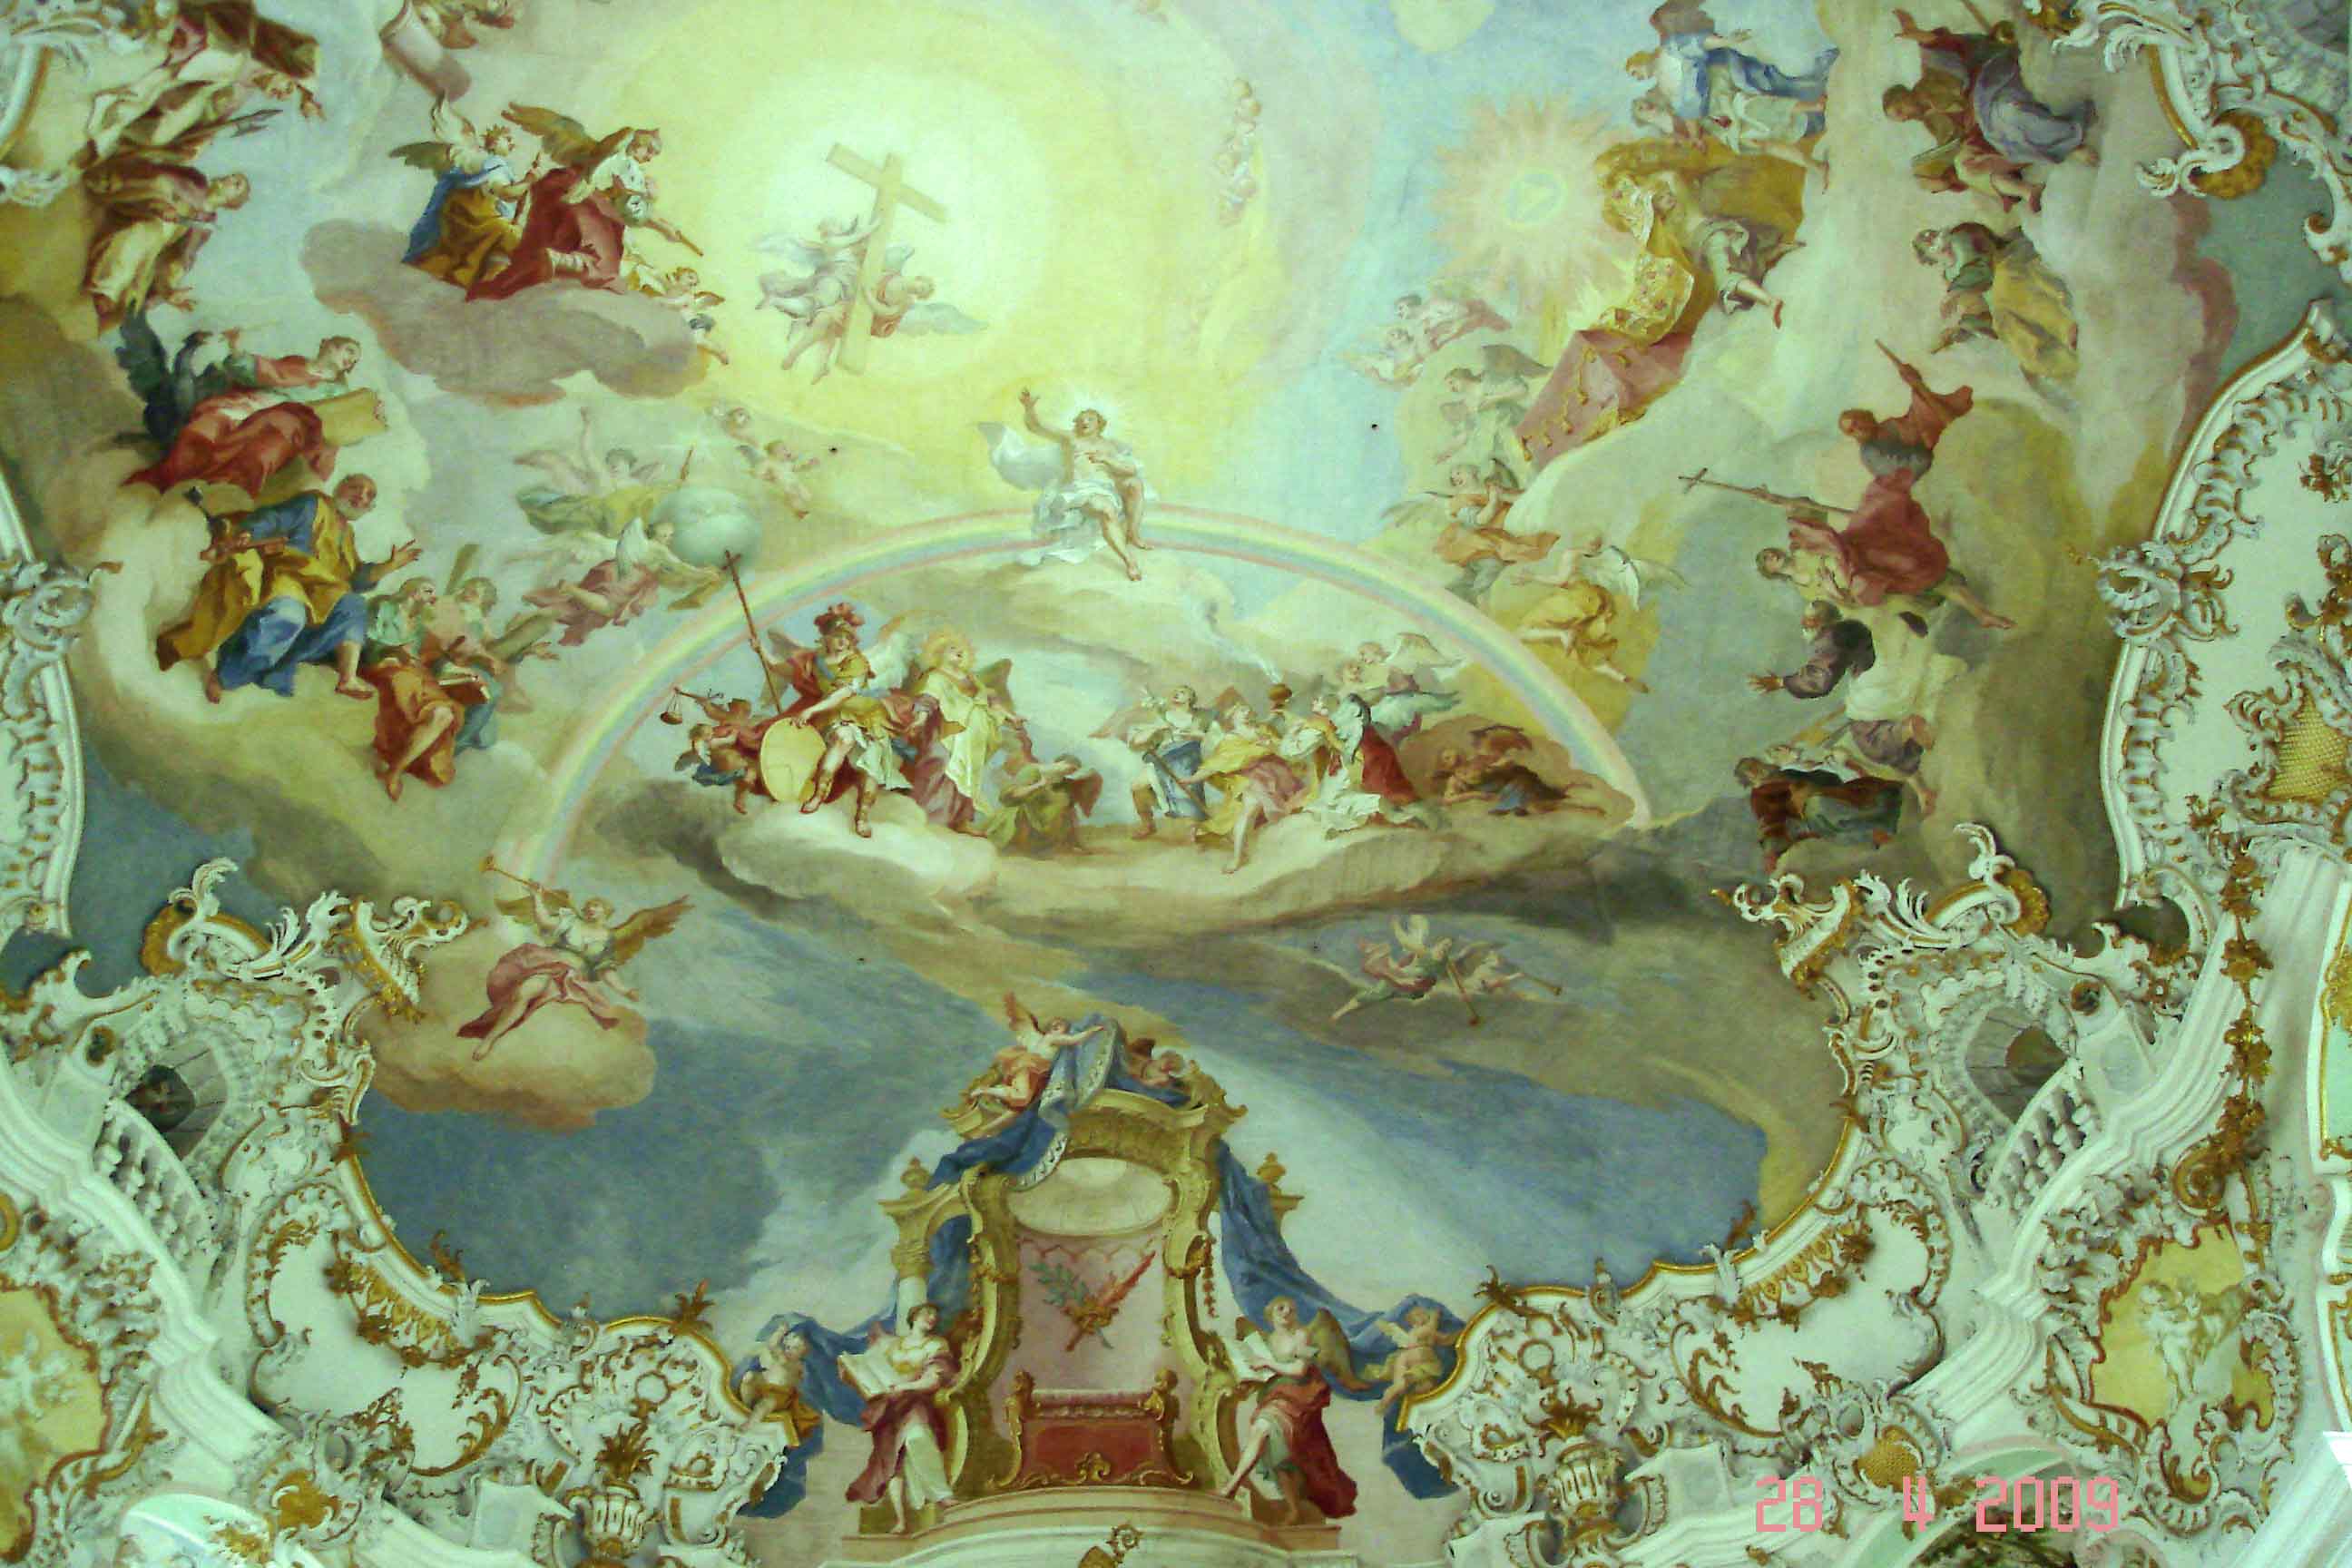 Wieskirche - detail of ceiling fresco